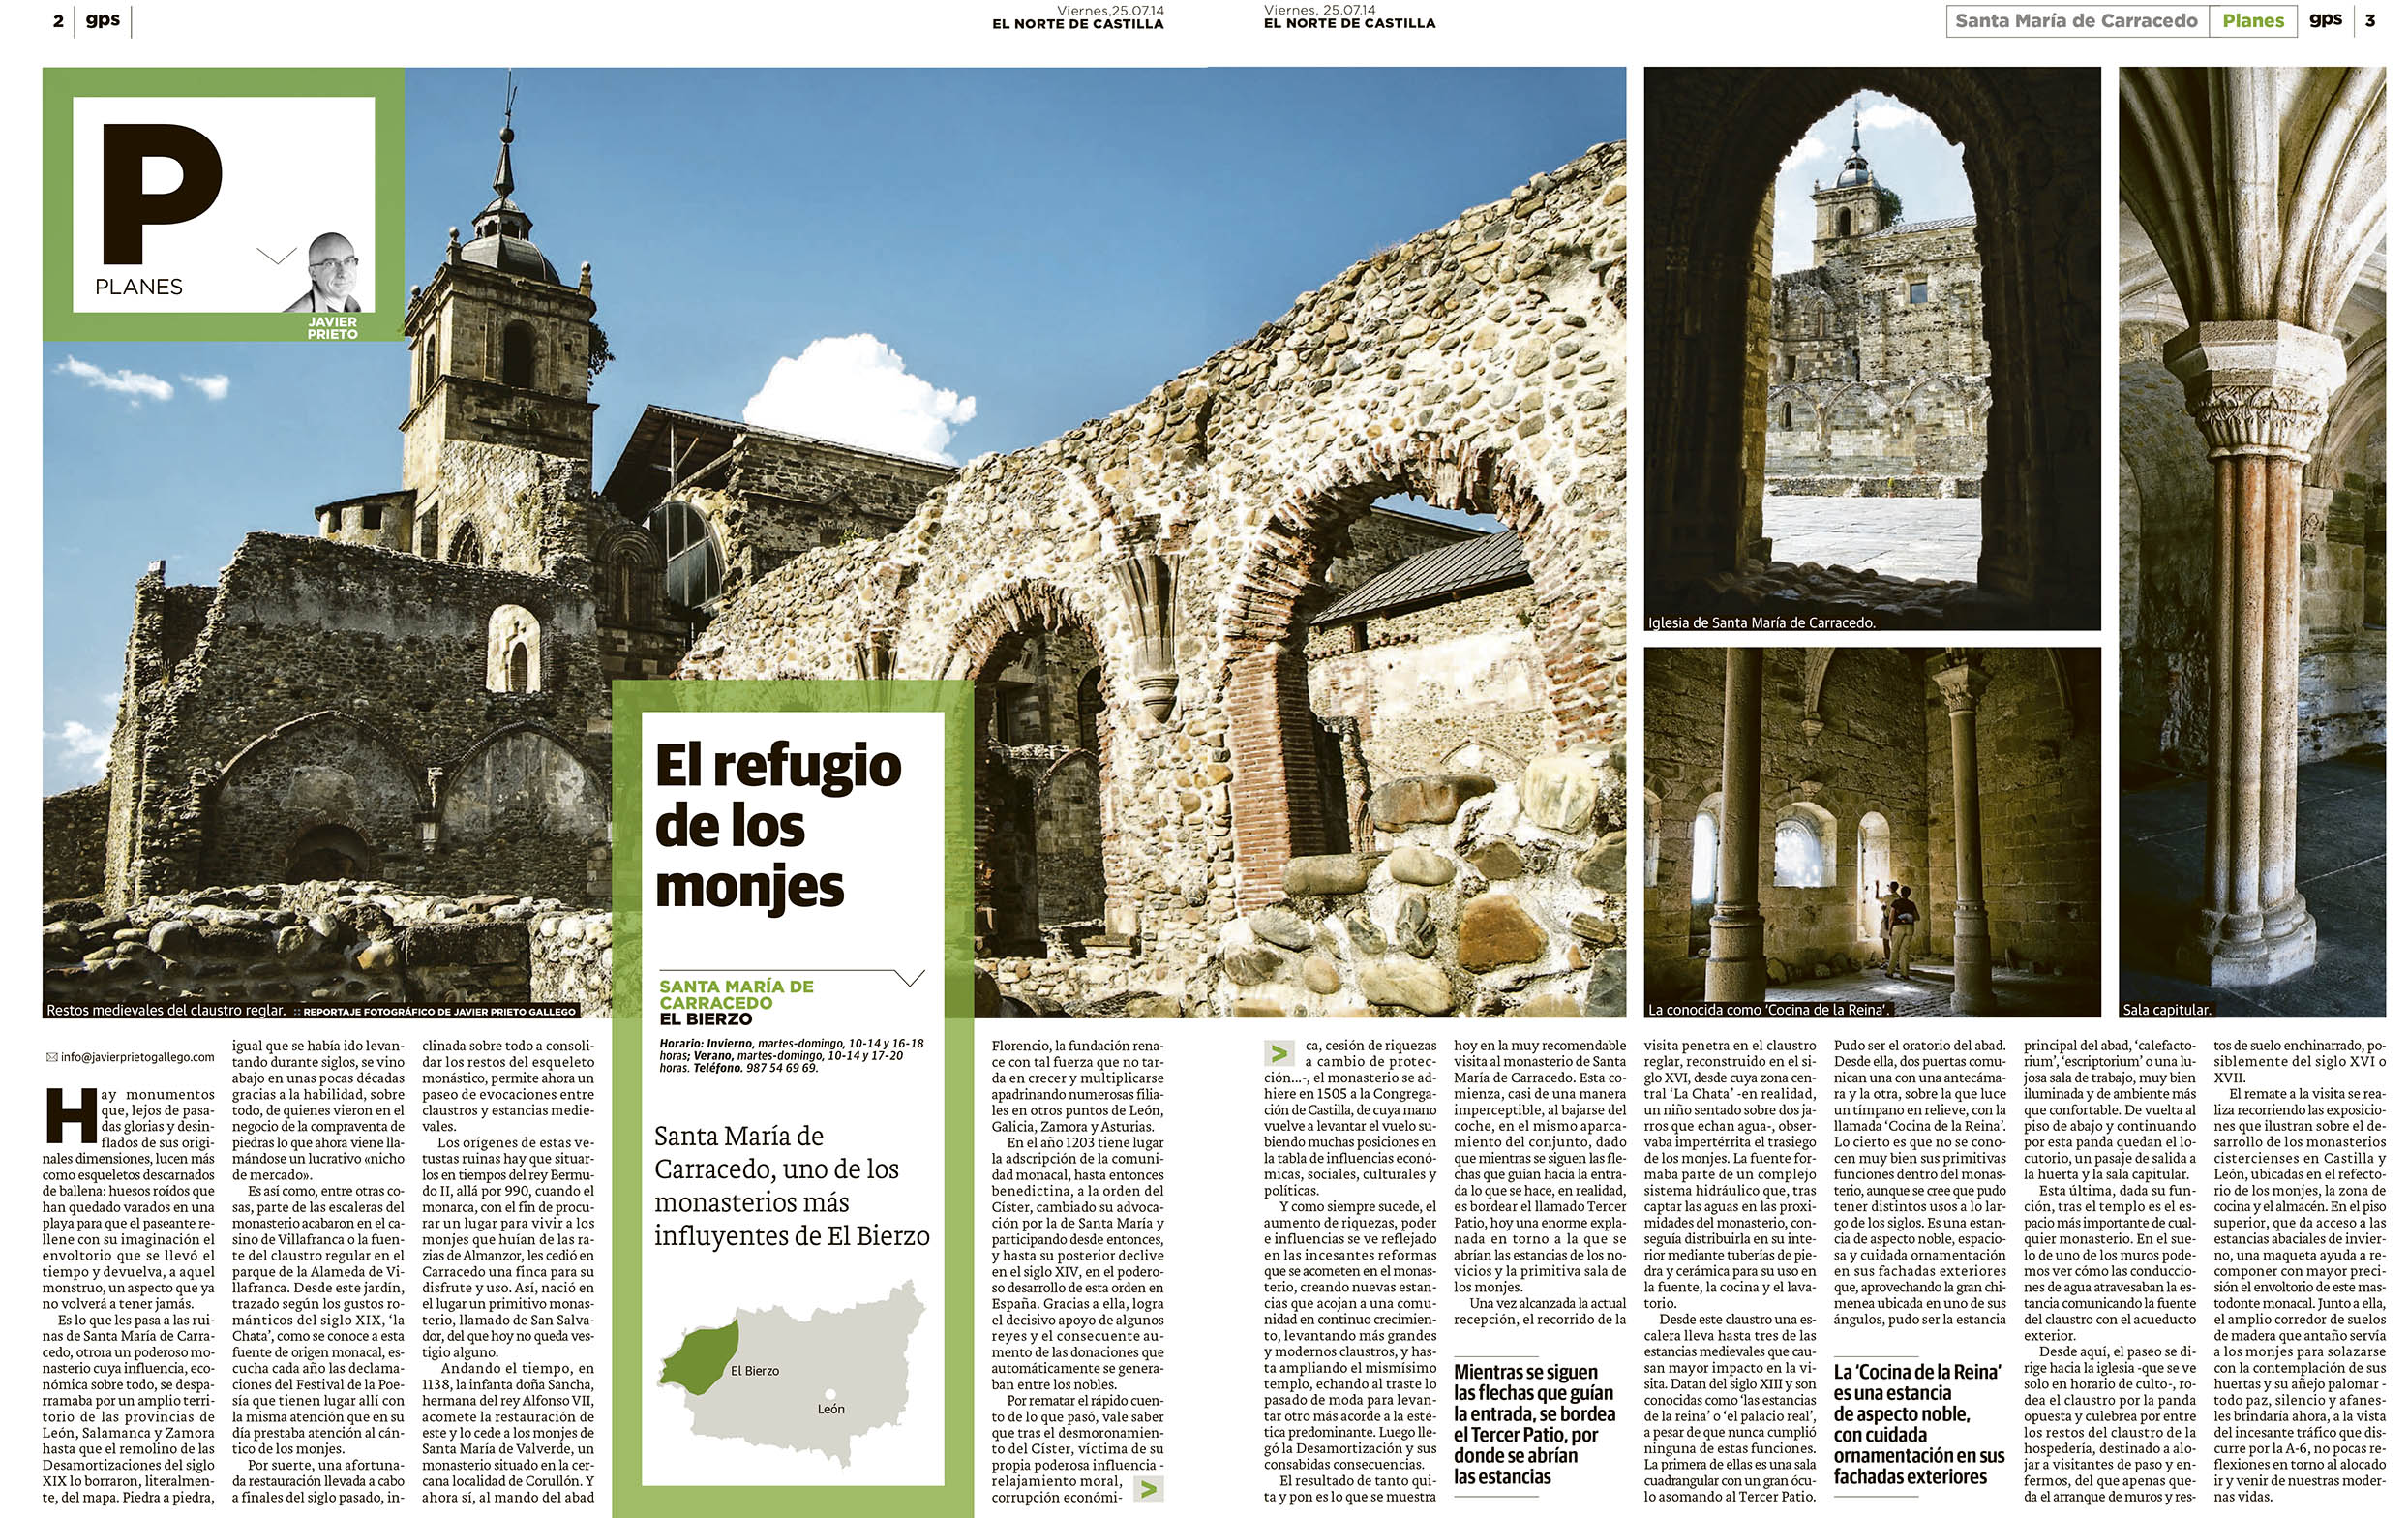 Reportaje publicado sobre Santa María de Carraedo publicado por Javier Prieto Gallego en el periódico EL NORTE DE CASTILLA.